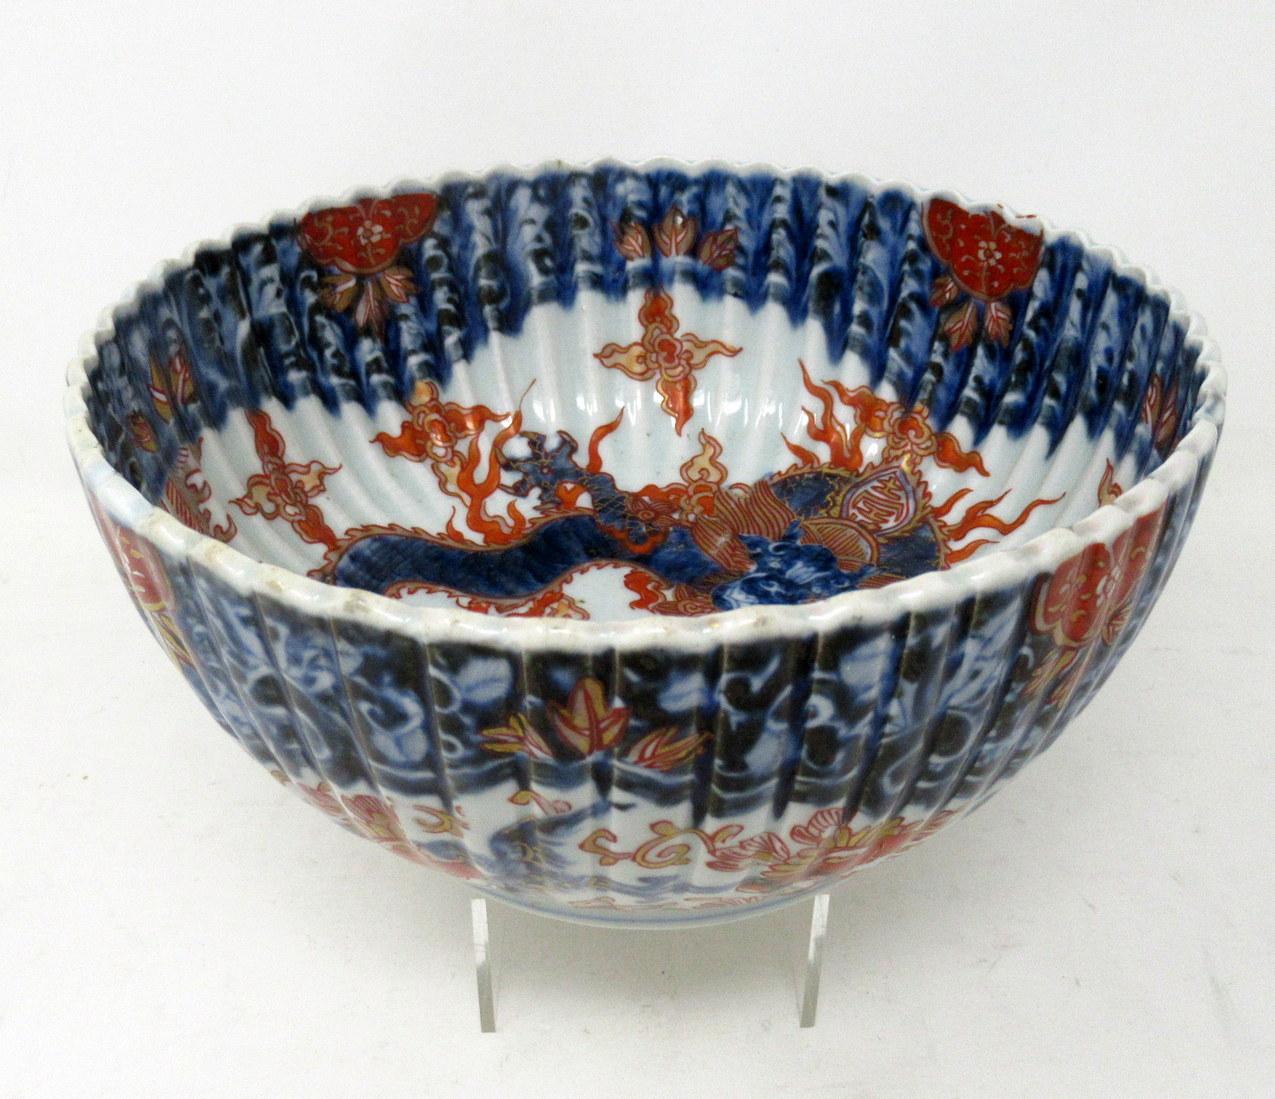 Antique Japanese Imari Porcelain Bowl Centerpiece Fukazawa Koransha Meiji Period 1